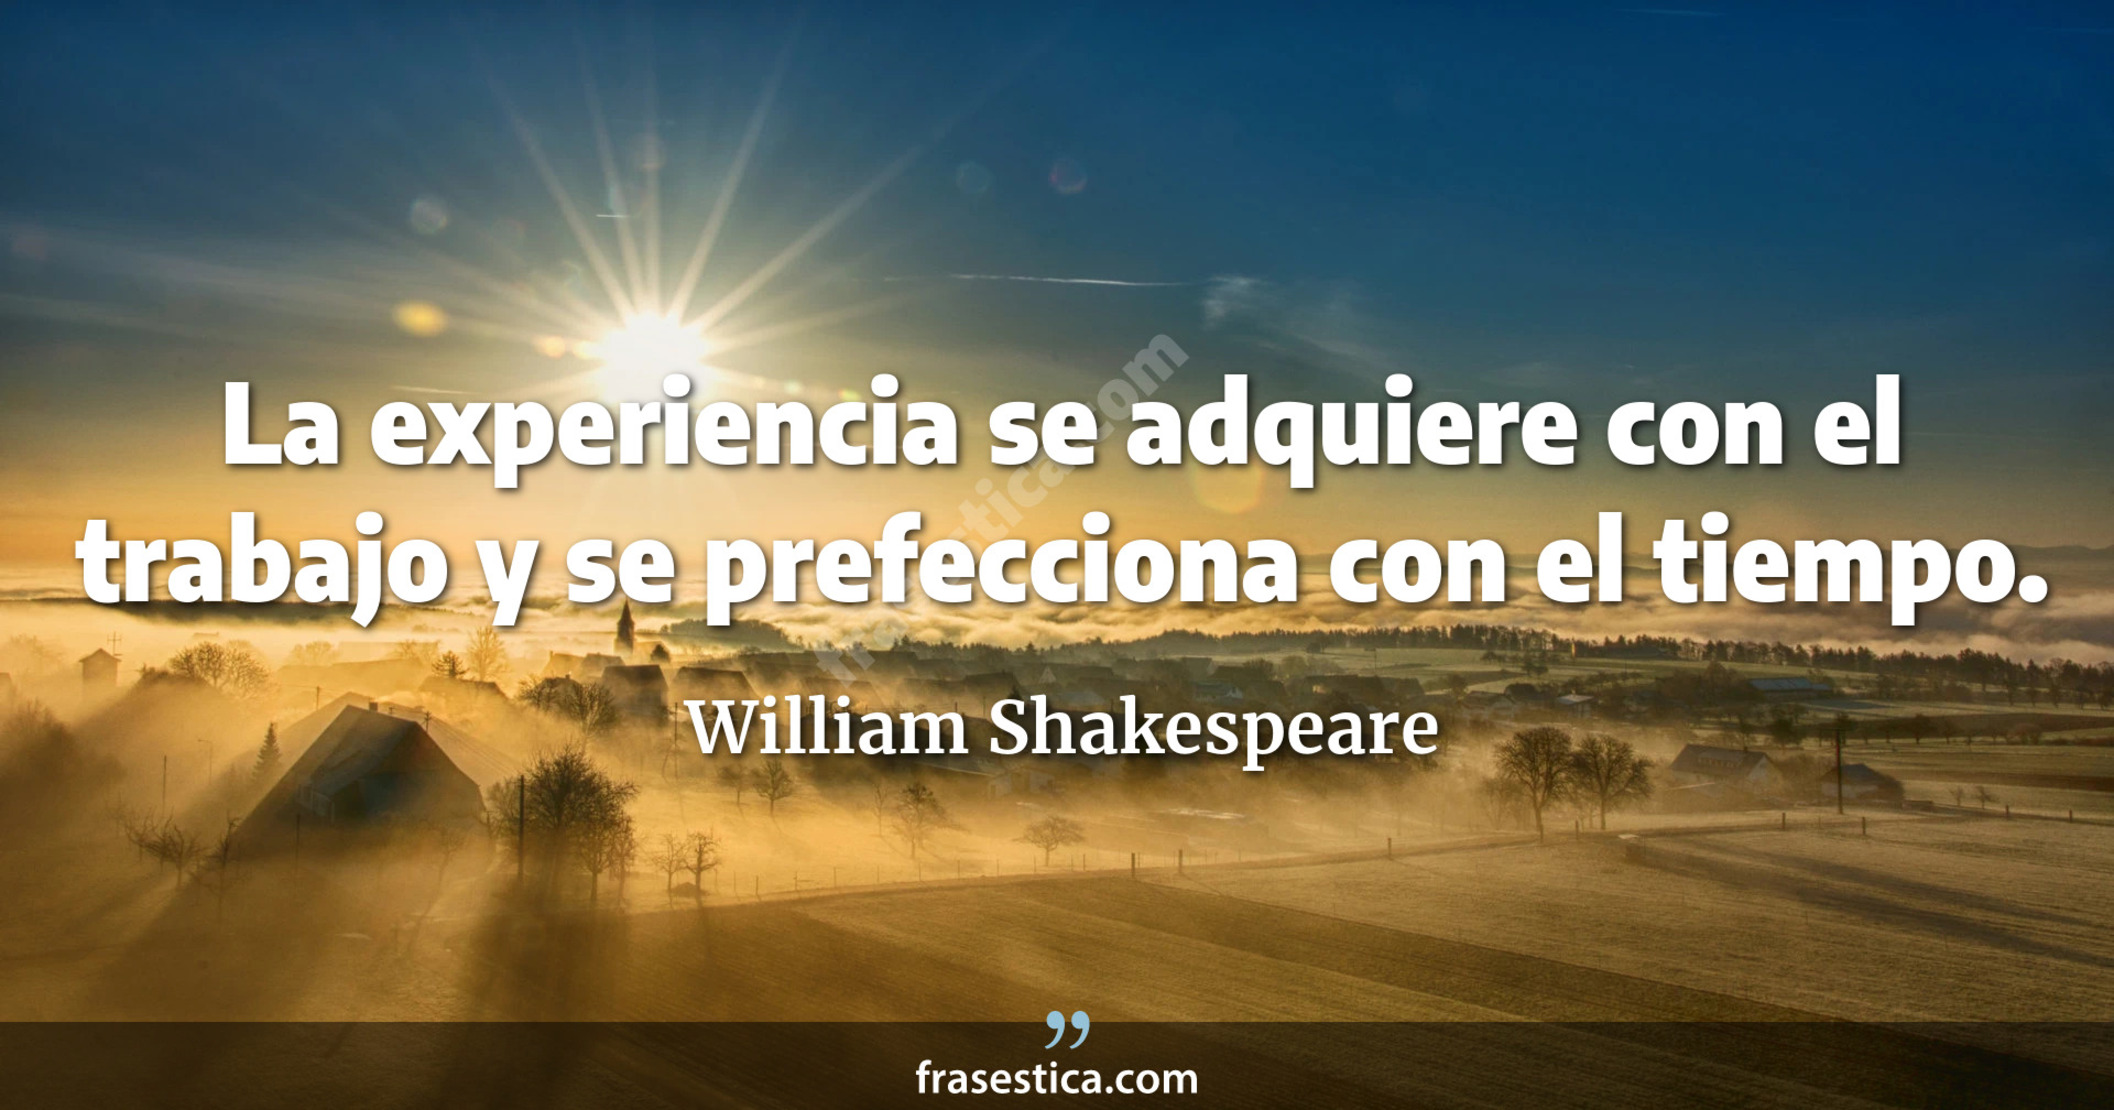 La experiencia se adquiere con el trabajo y se prefecciona con el tiempo. - William Shakespeare